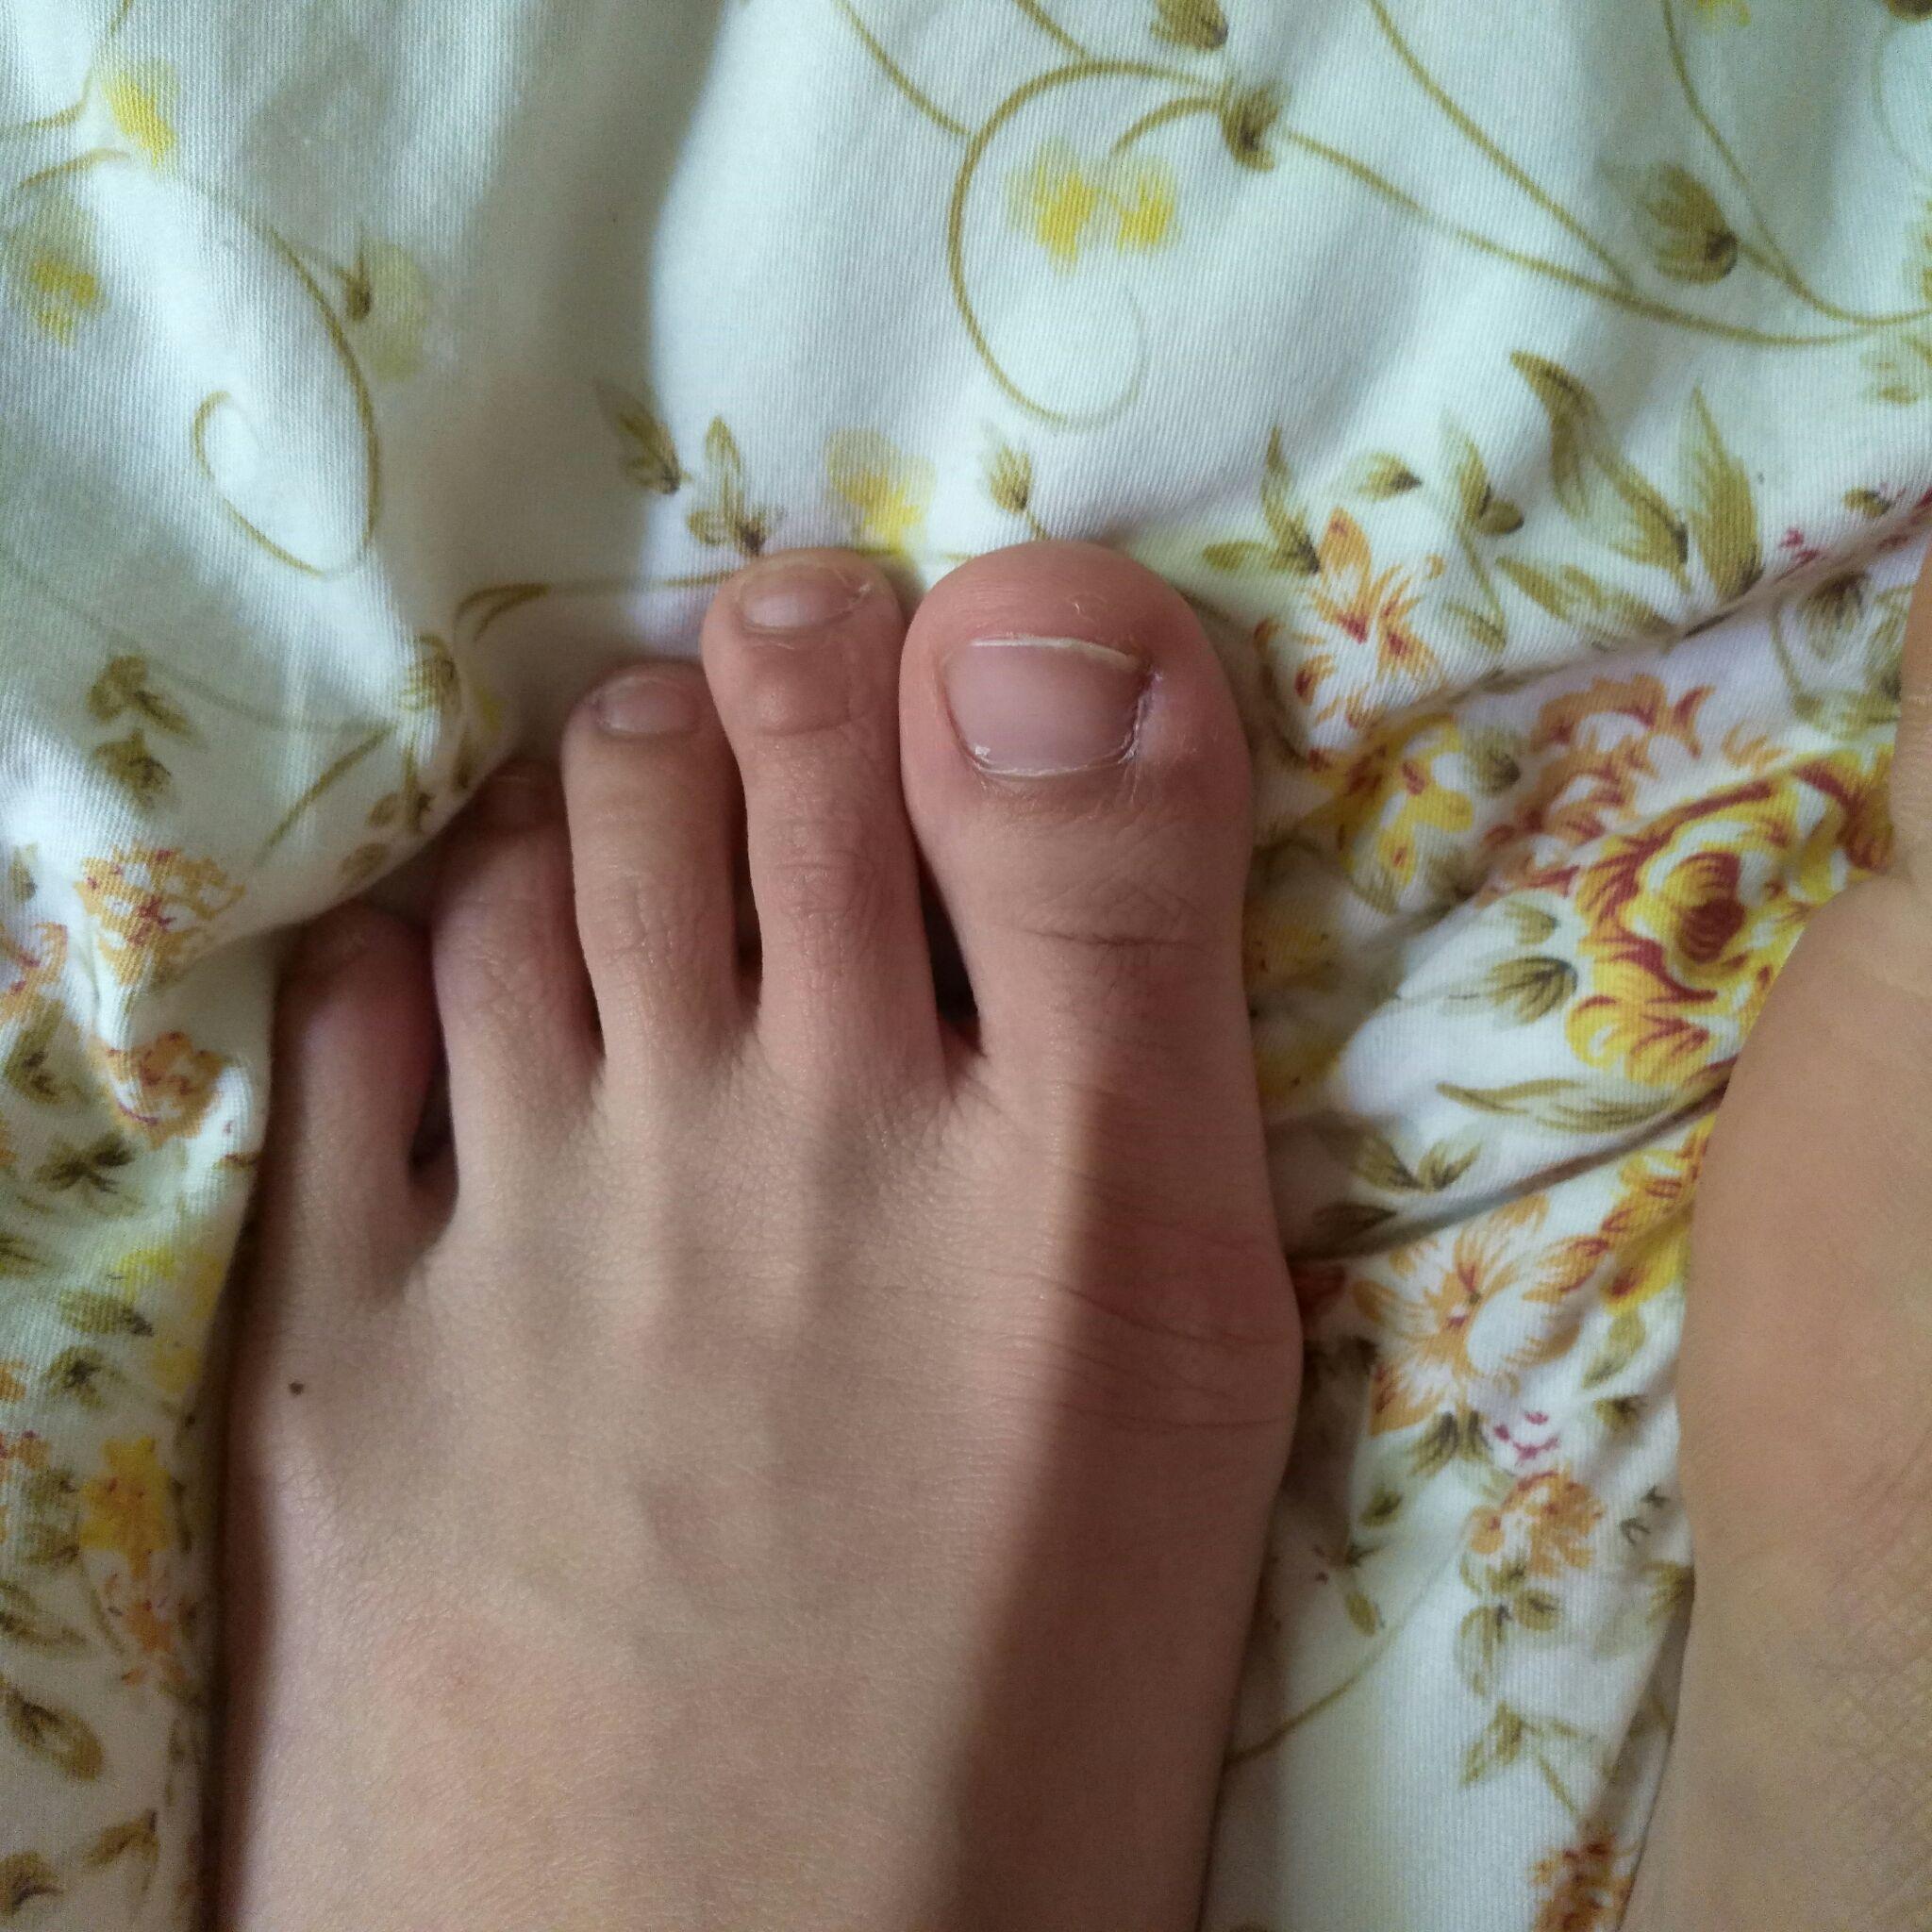 脚趾能否五指张开是基因差异吗？ - 知乎